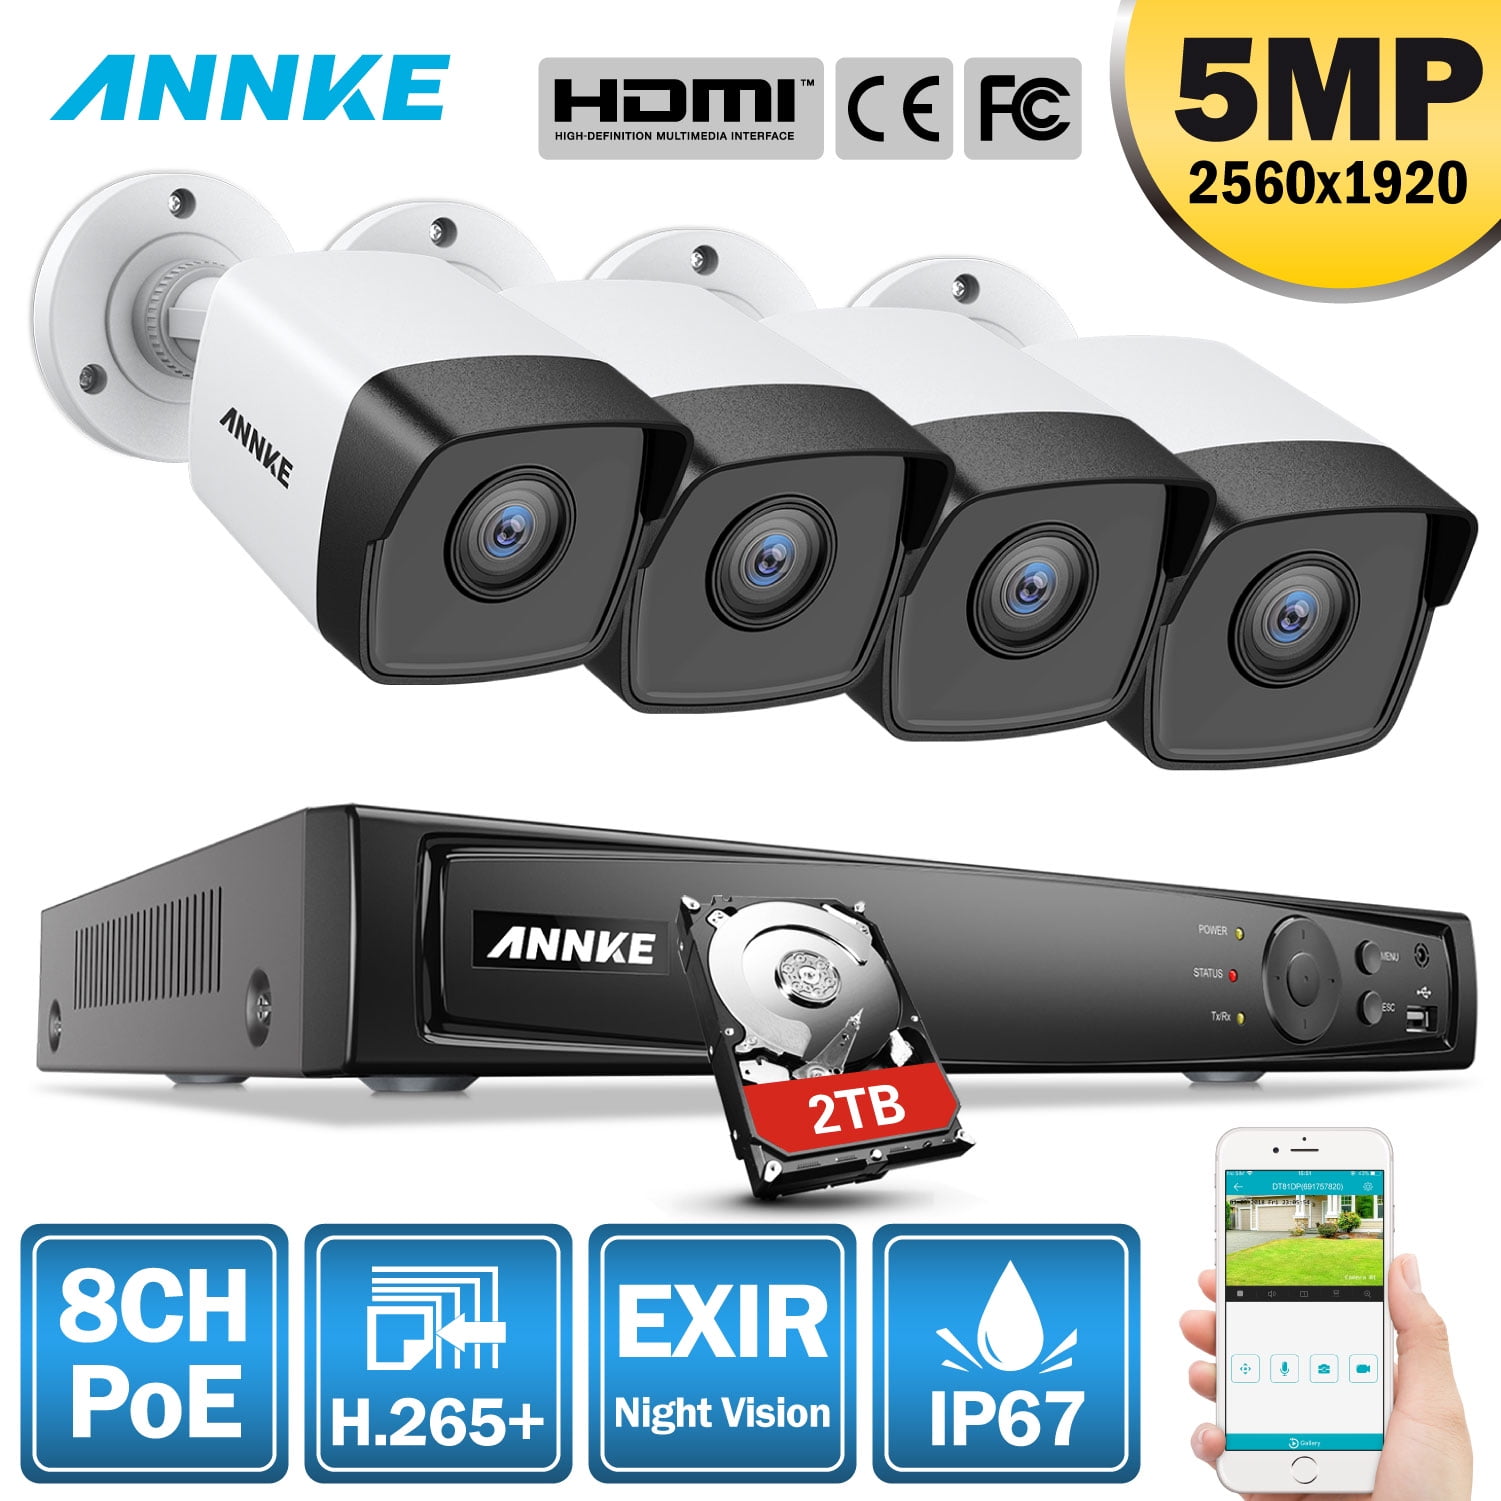 annke hd wireless video surveillance system